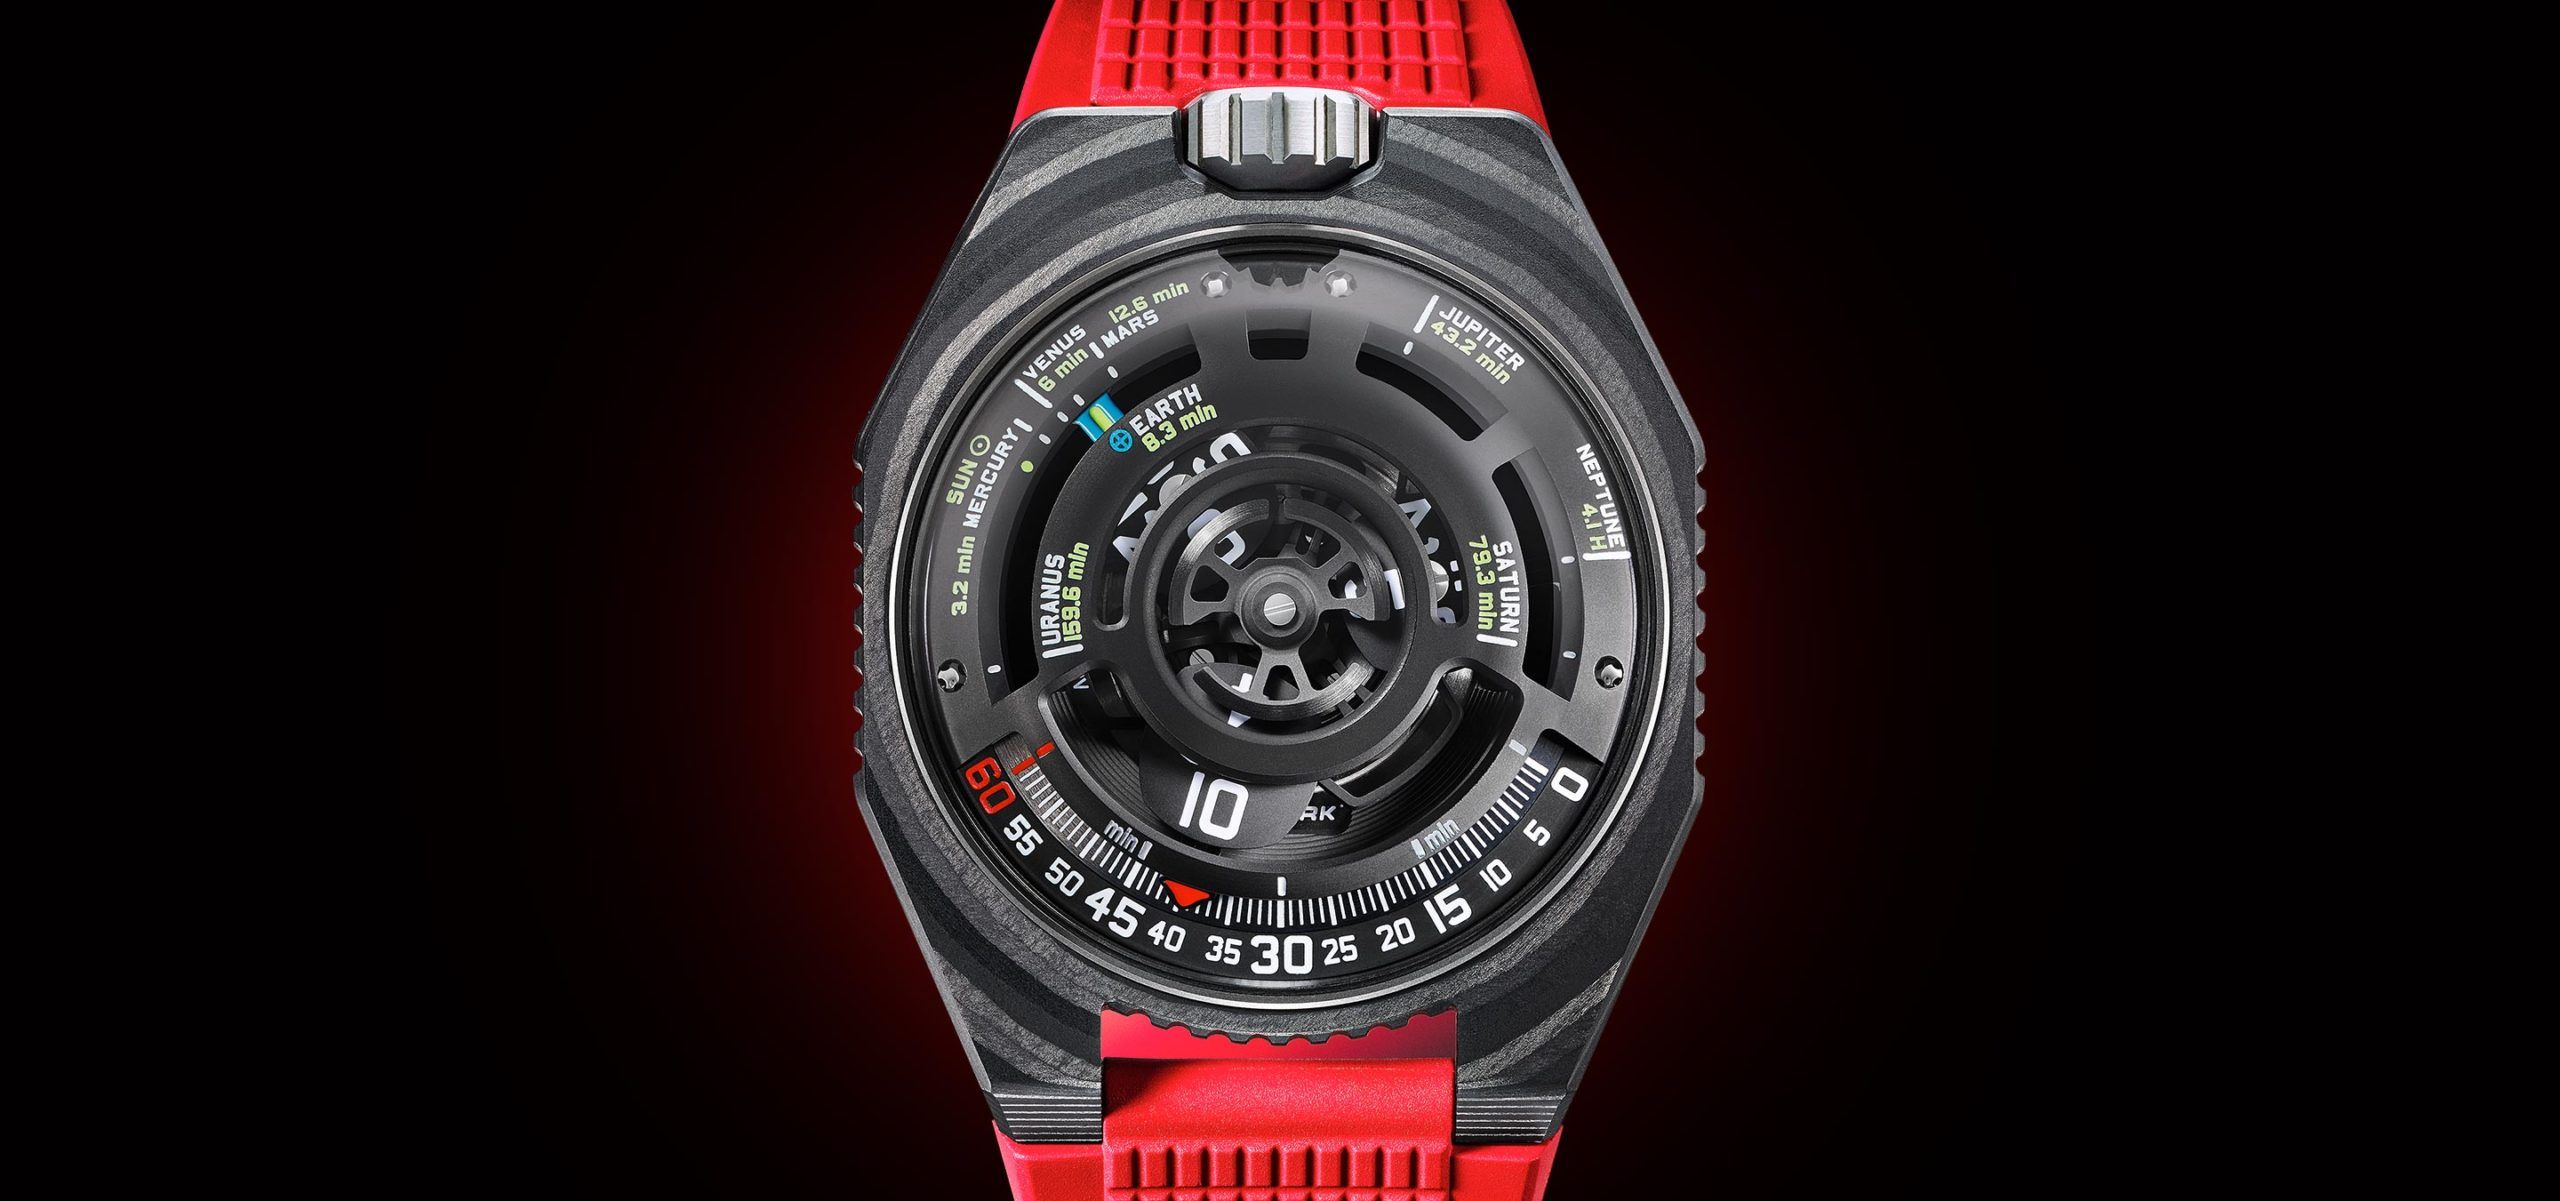 Godspeed! The New Urwerk 100-V LightSpeed Timepiece